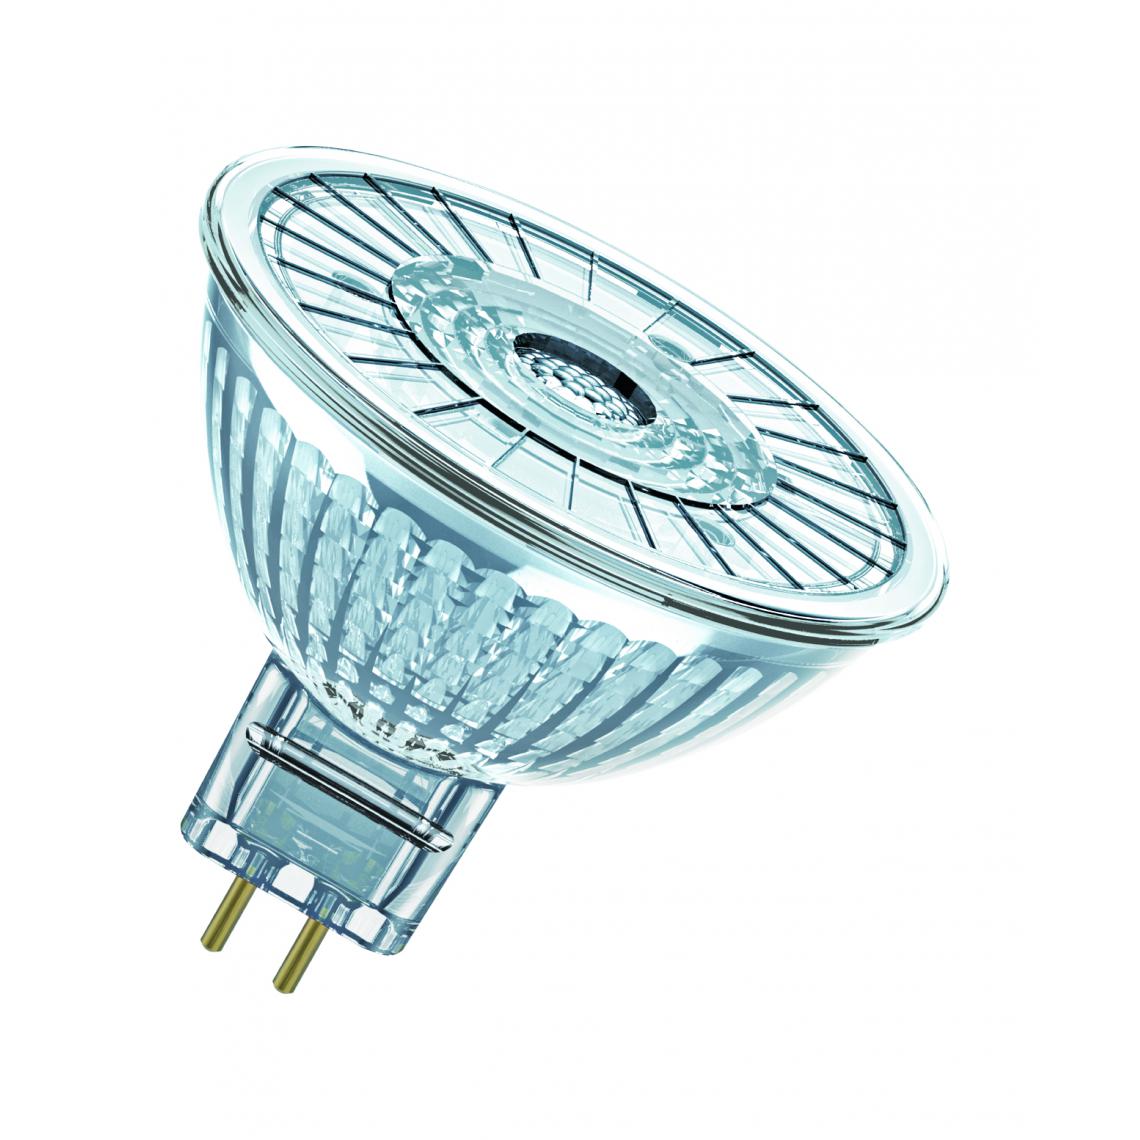 Osram - ampoule à led - osram parathom - gu5.3 - 8w - 3000k - 561 lm - mr16 - dimmable - osram 449442 - Ampoules LED